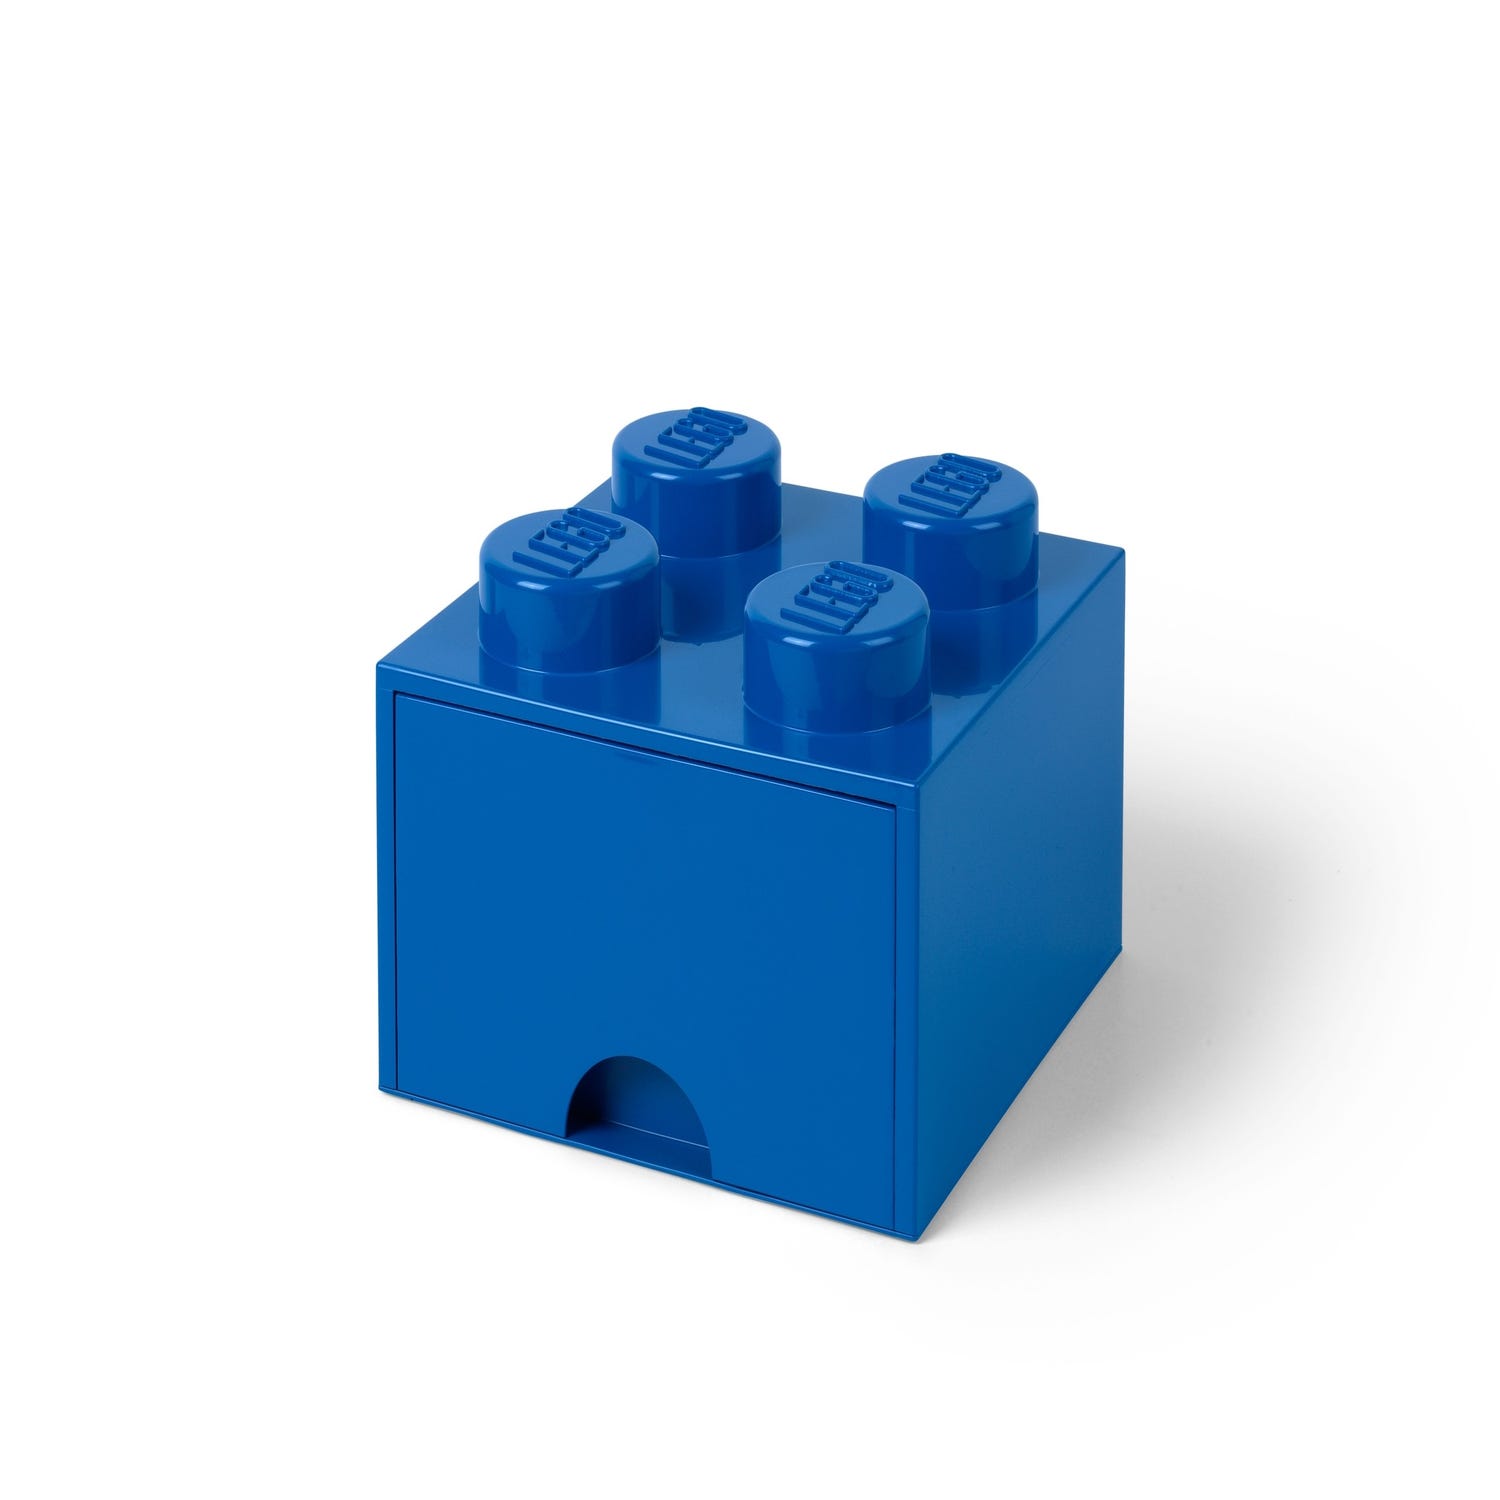 4-Stud Storage Brick – Azure Blue 5006936, Other